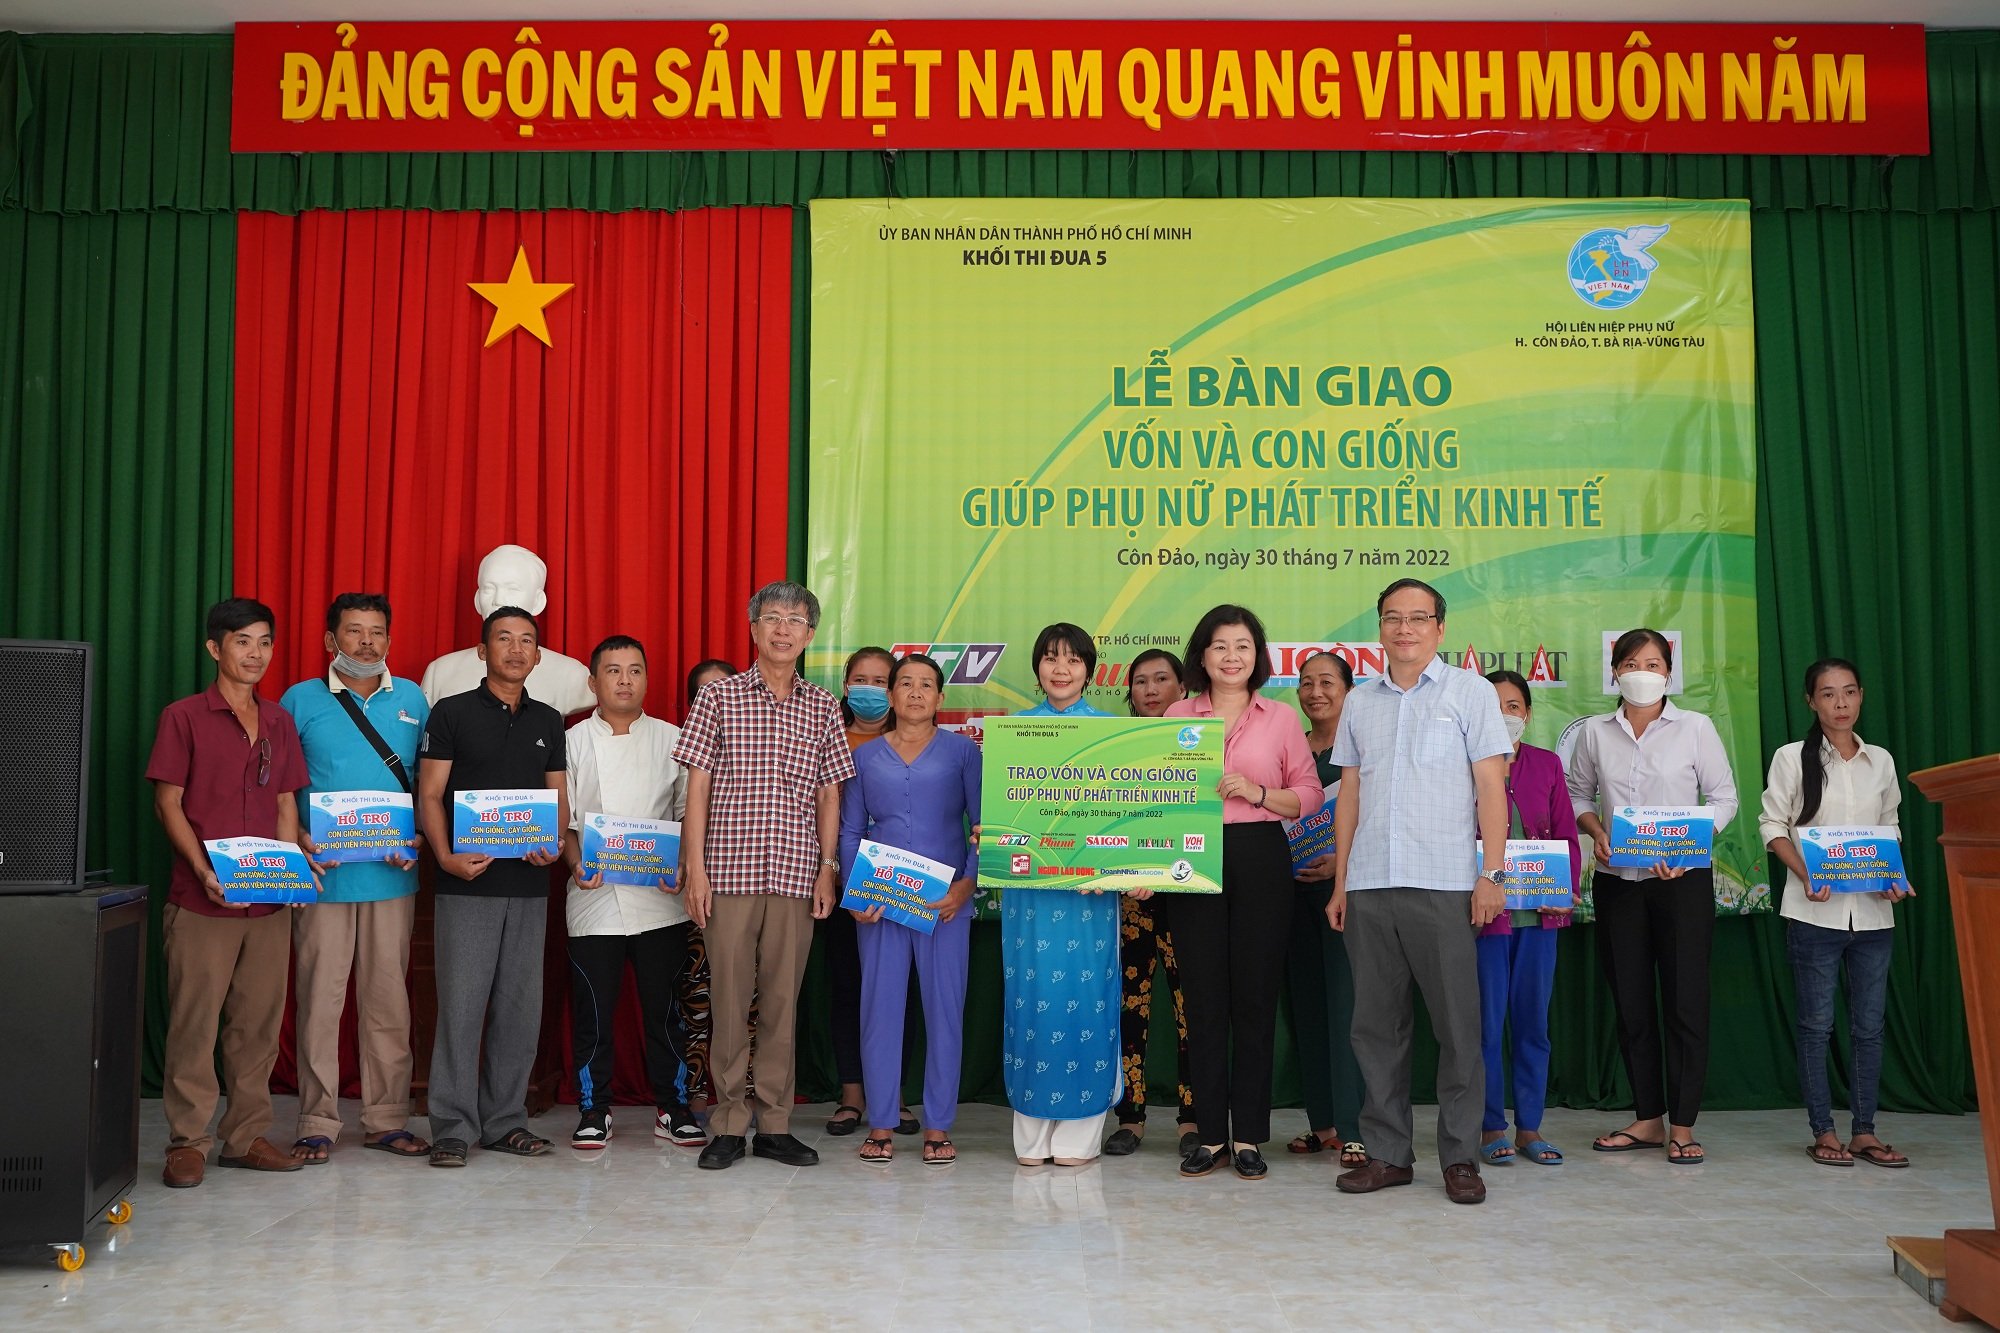 Khối thi đua 5 trao quỹ vốn 50 triệu đồng cho Hội LHPN huyện Côn Đảo.